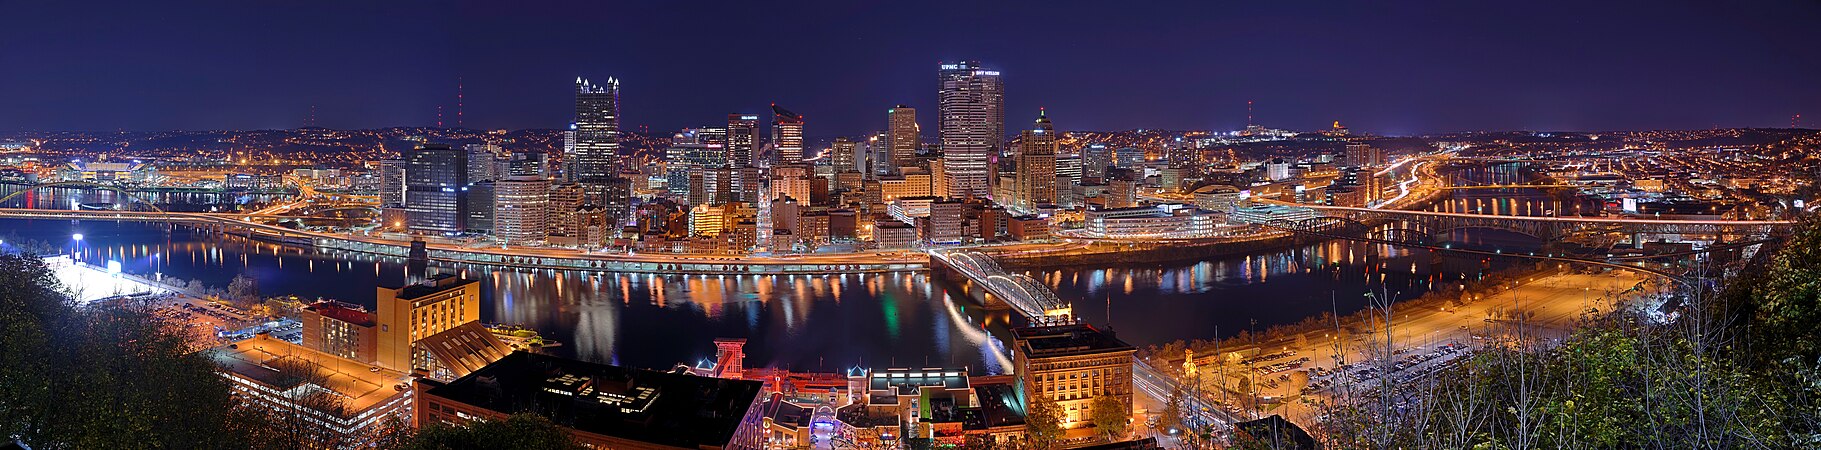 Pittsburgh, by Dllu